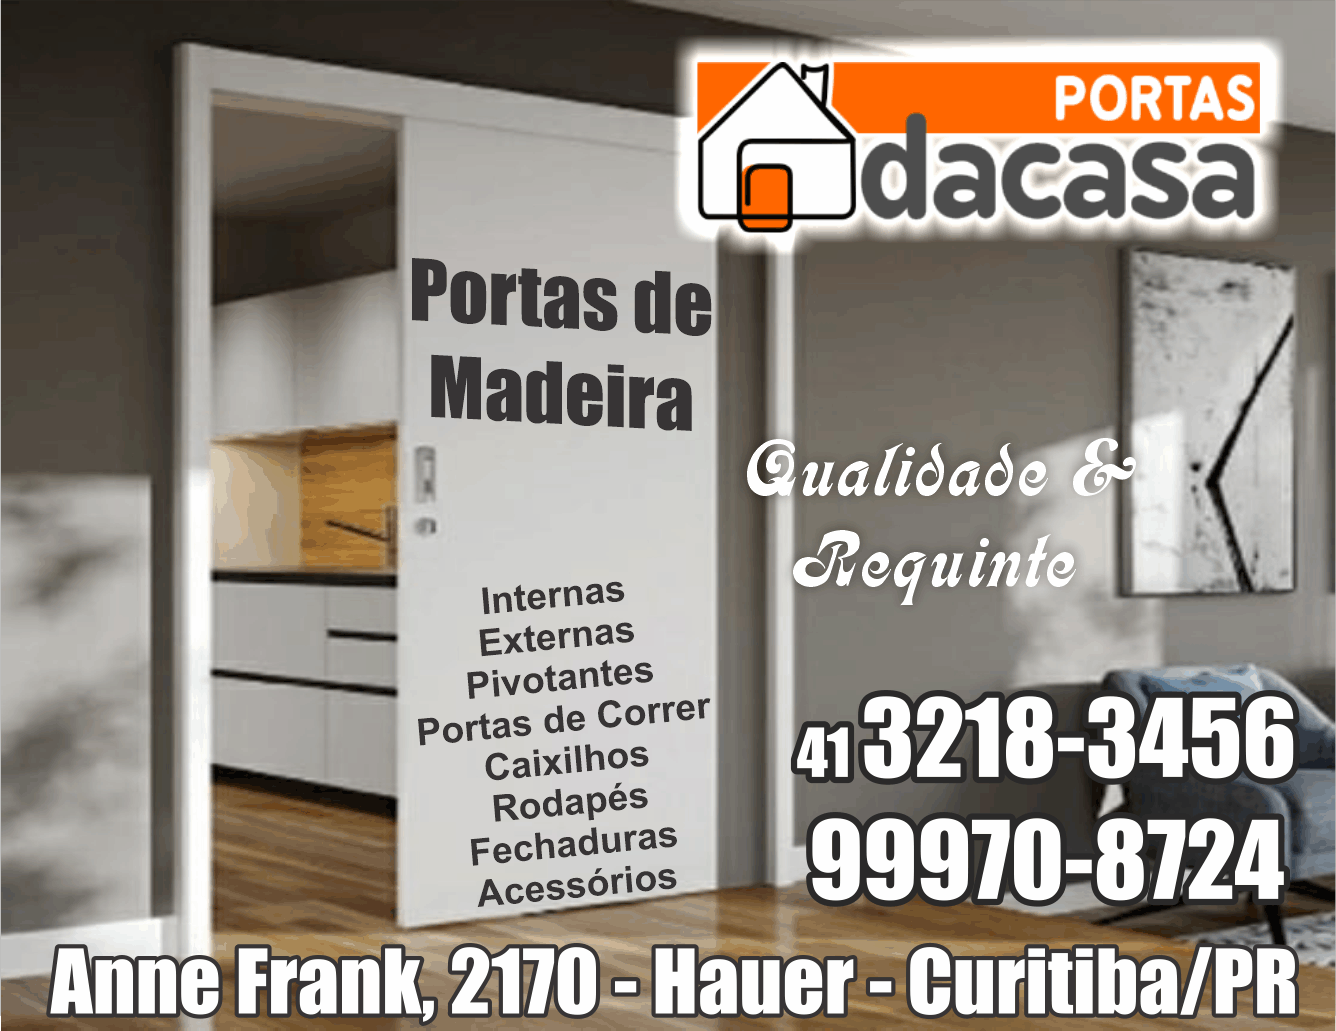 Portas da Casa Portas de Madeira e Complementos      RUA ANNE FRANK, 2170, CURITIBA - PR  Fones: (41)3278-3456 /